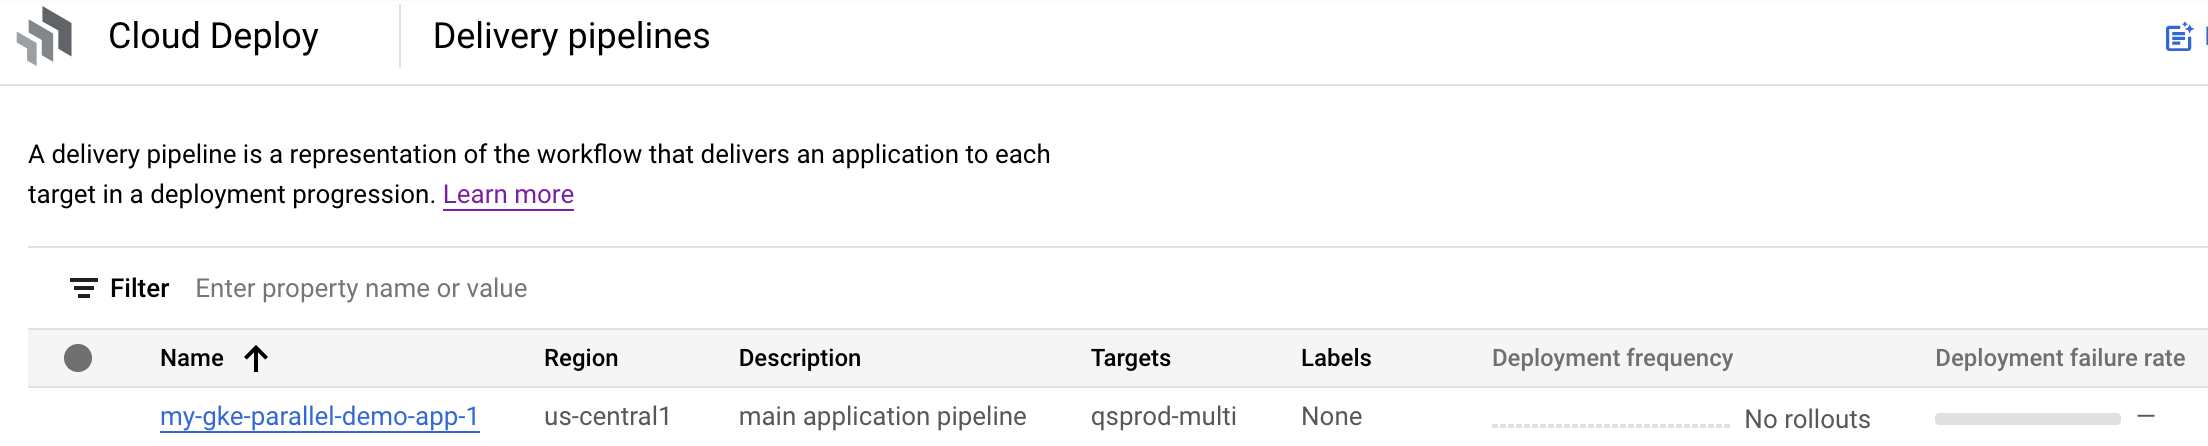 visualizzazione della pipeline di distribuzione nella console Google Cloud 